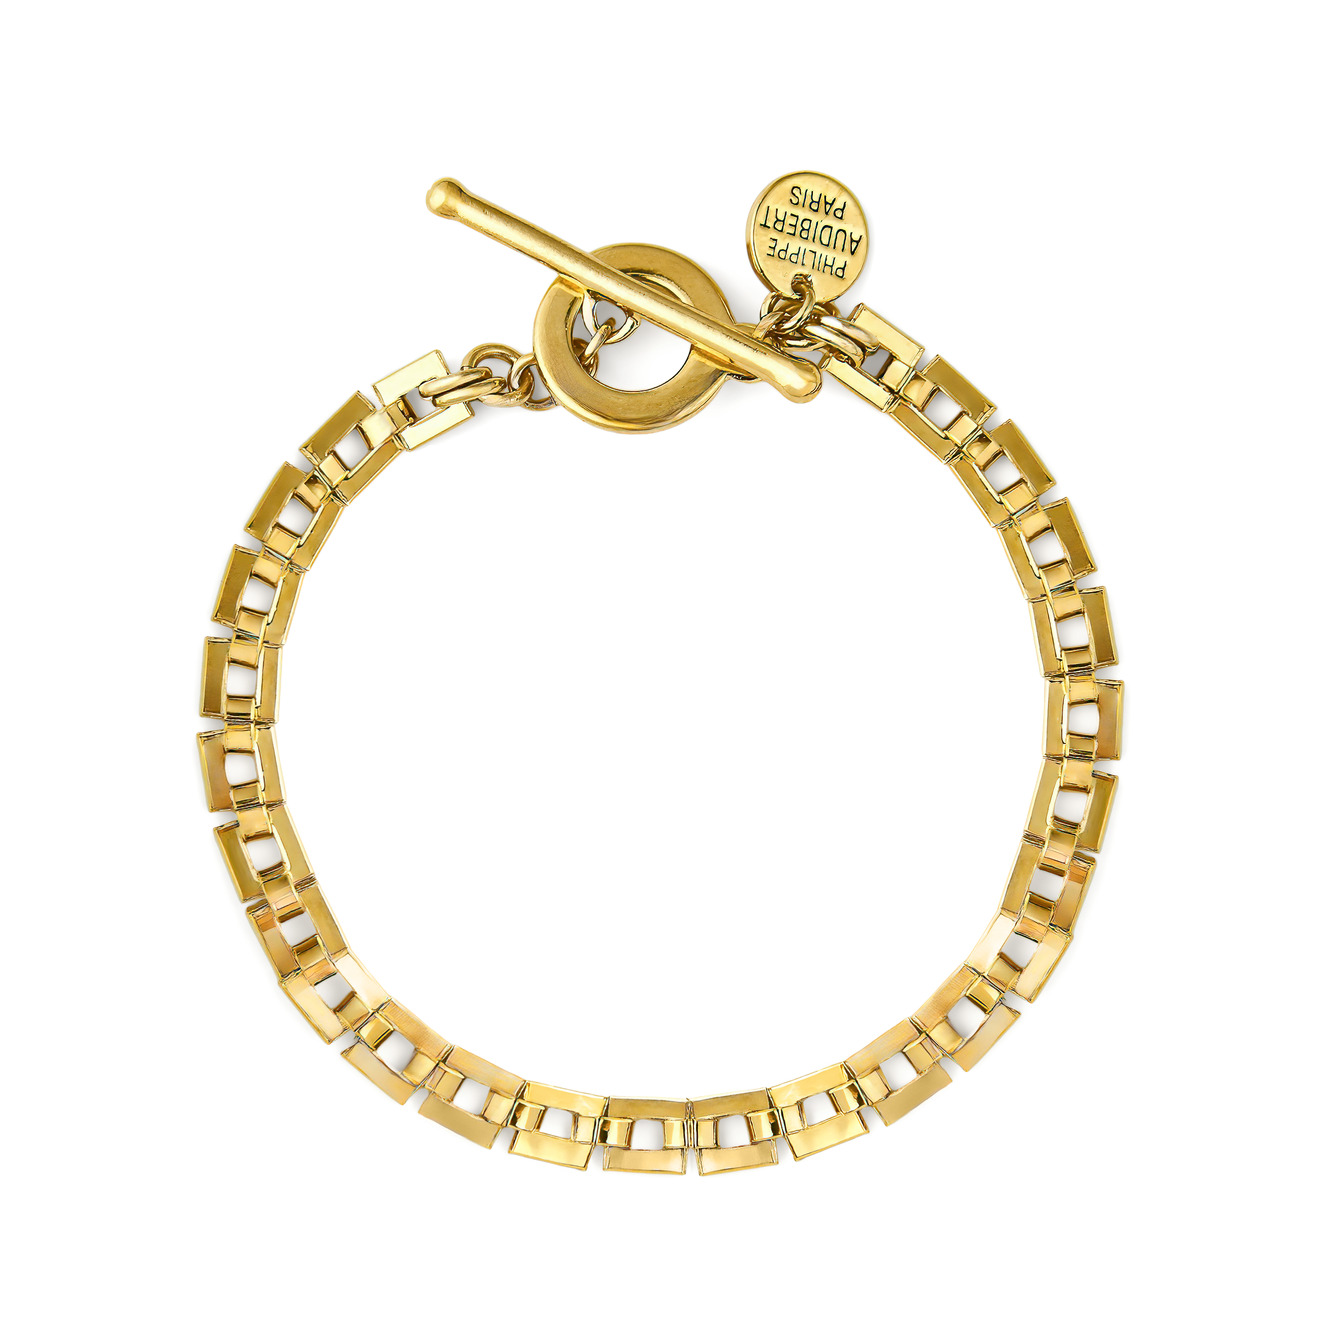 Philippe Audibert Позолоченный браслет-цепь Avner с квадратными звеньями philippe audibert колье цепь с разными звеньями yatus покрытое серебром